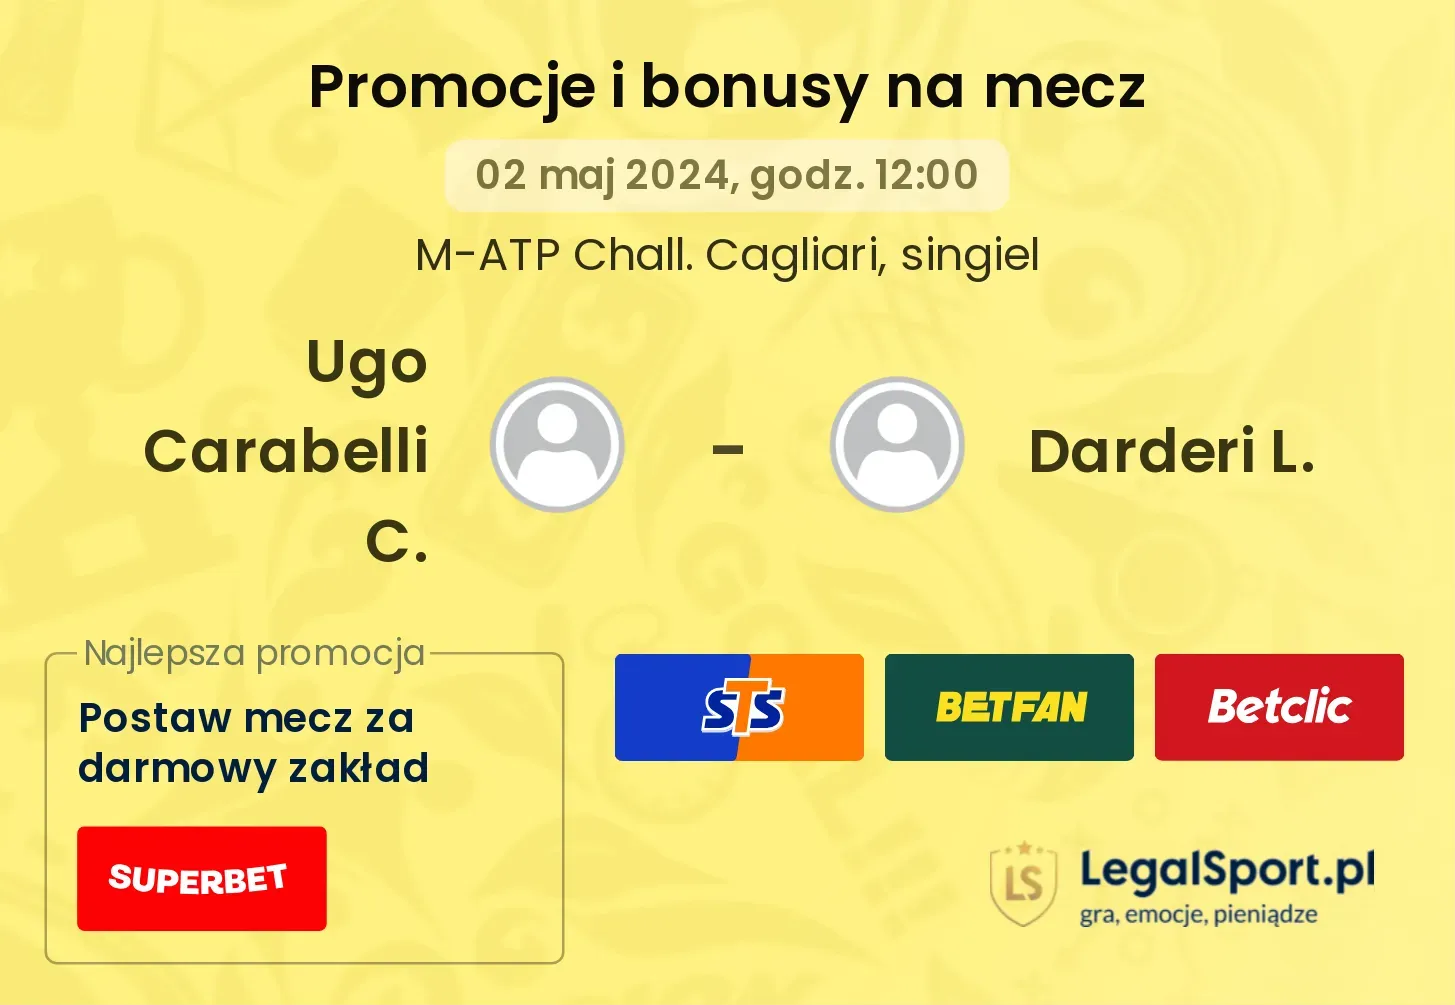 Ugo Carabelli C. - Darderi L. promocje bonusy na mecz